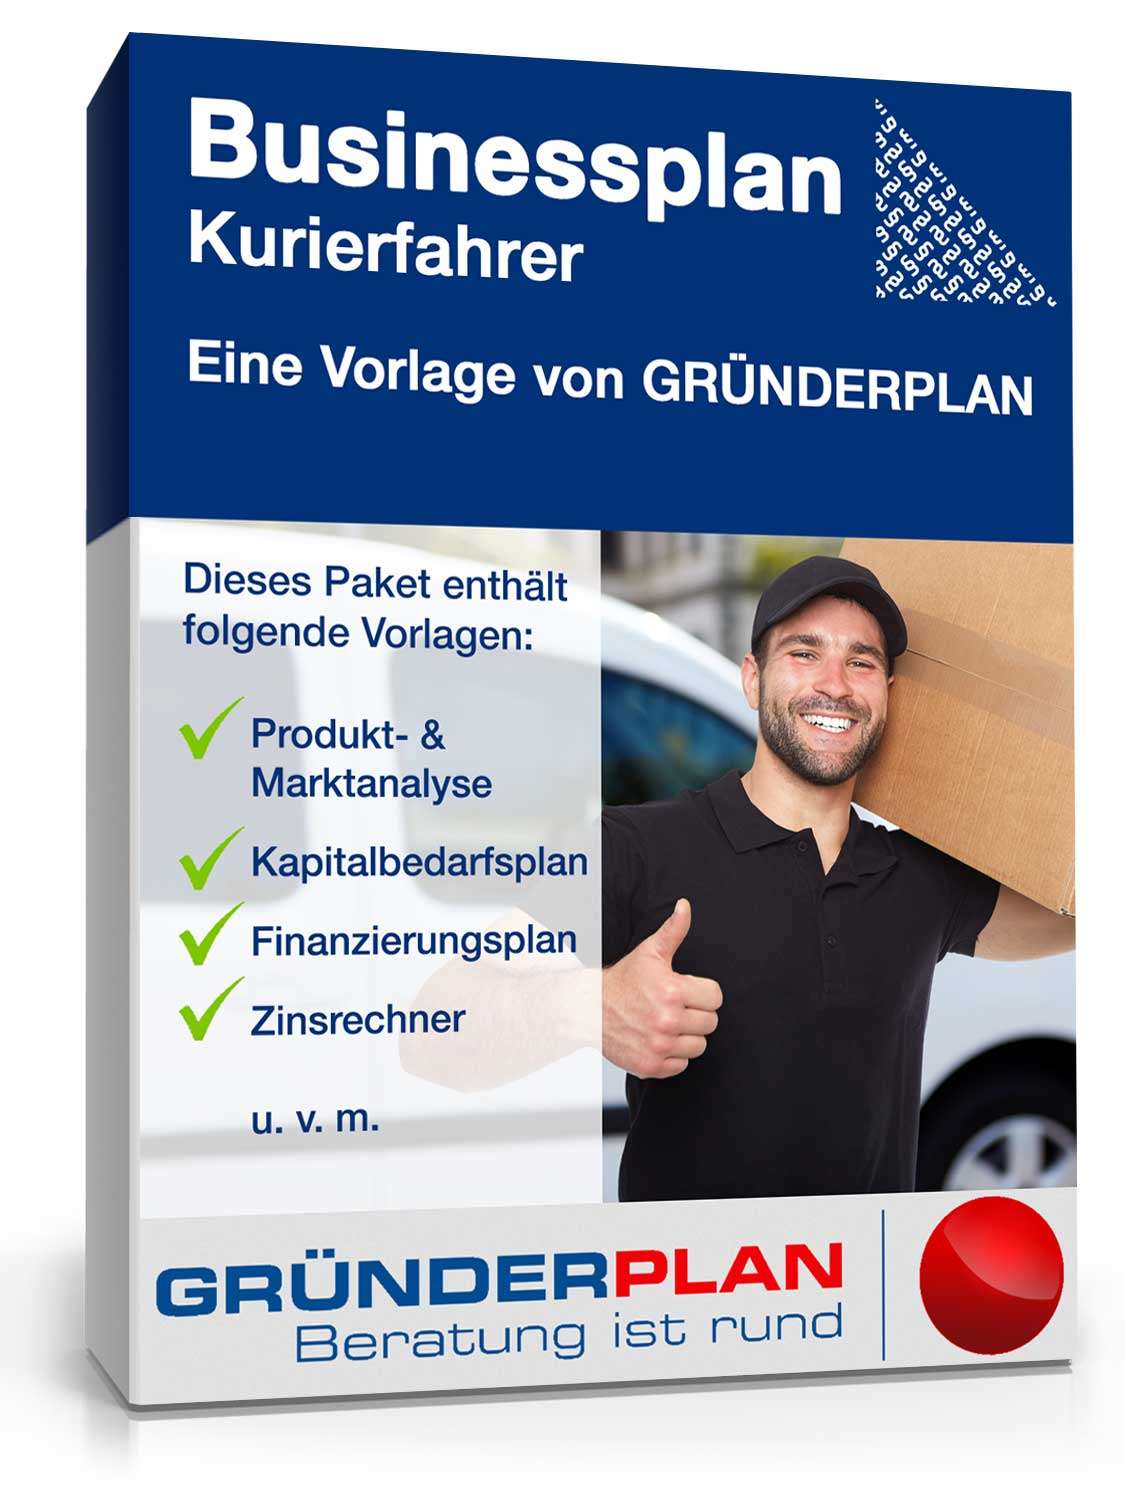 Hauptbild des Produkts: Businessplan Kurierfahrer von Gründerplan